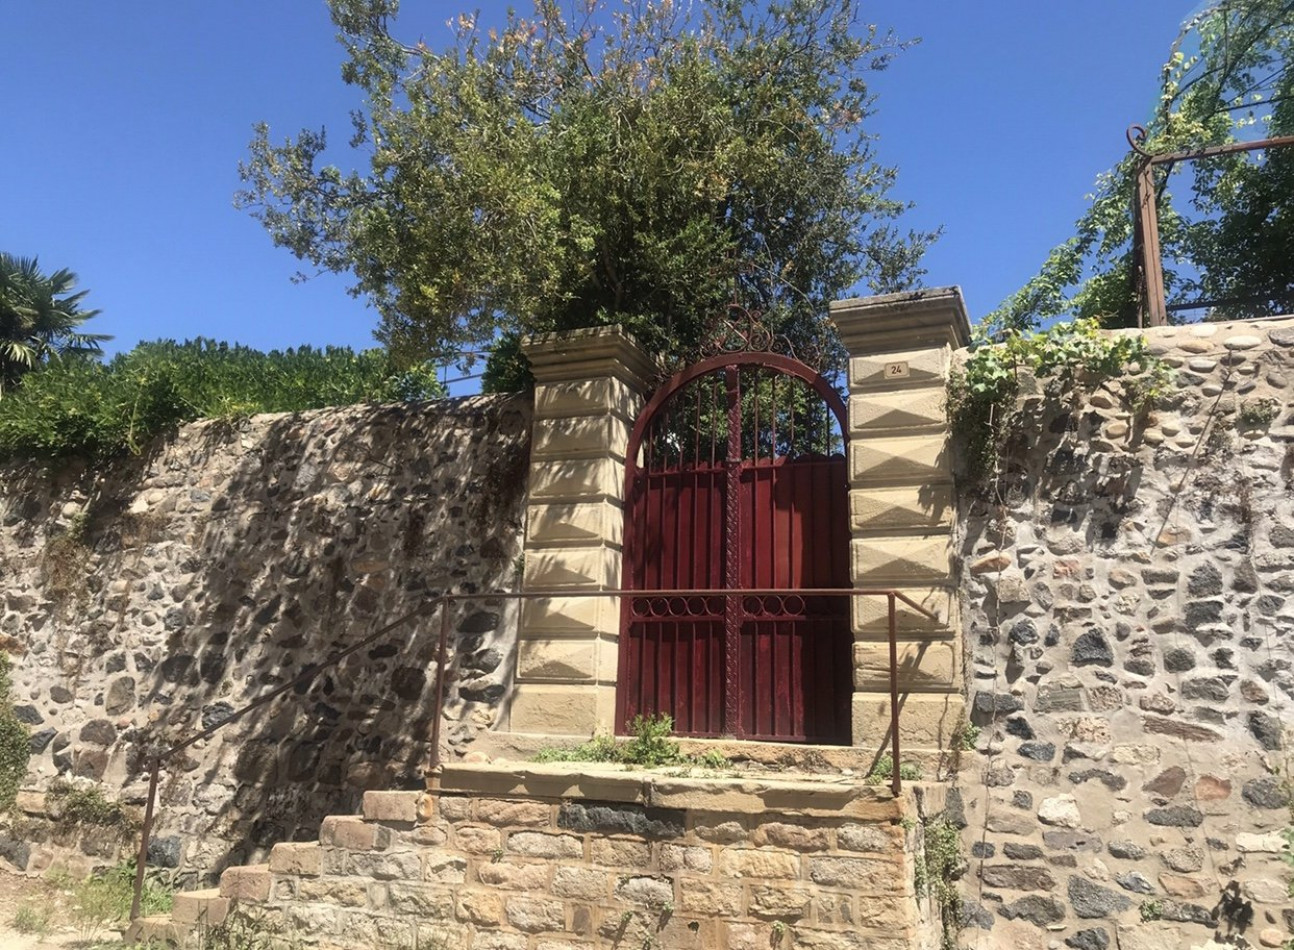 sale Maison en pierre Beaulieu Sur Dordogne